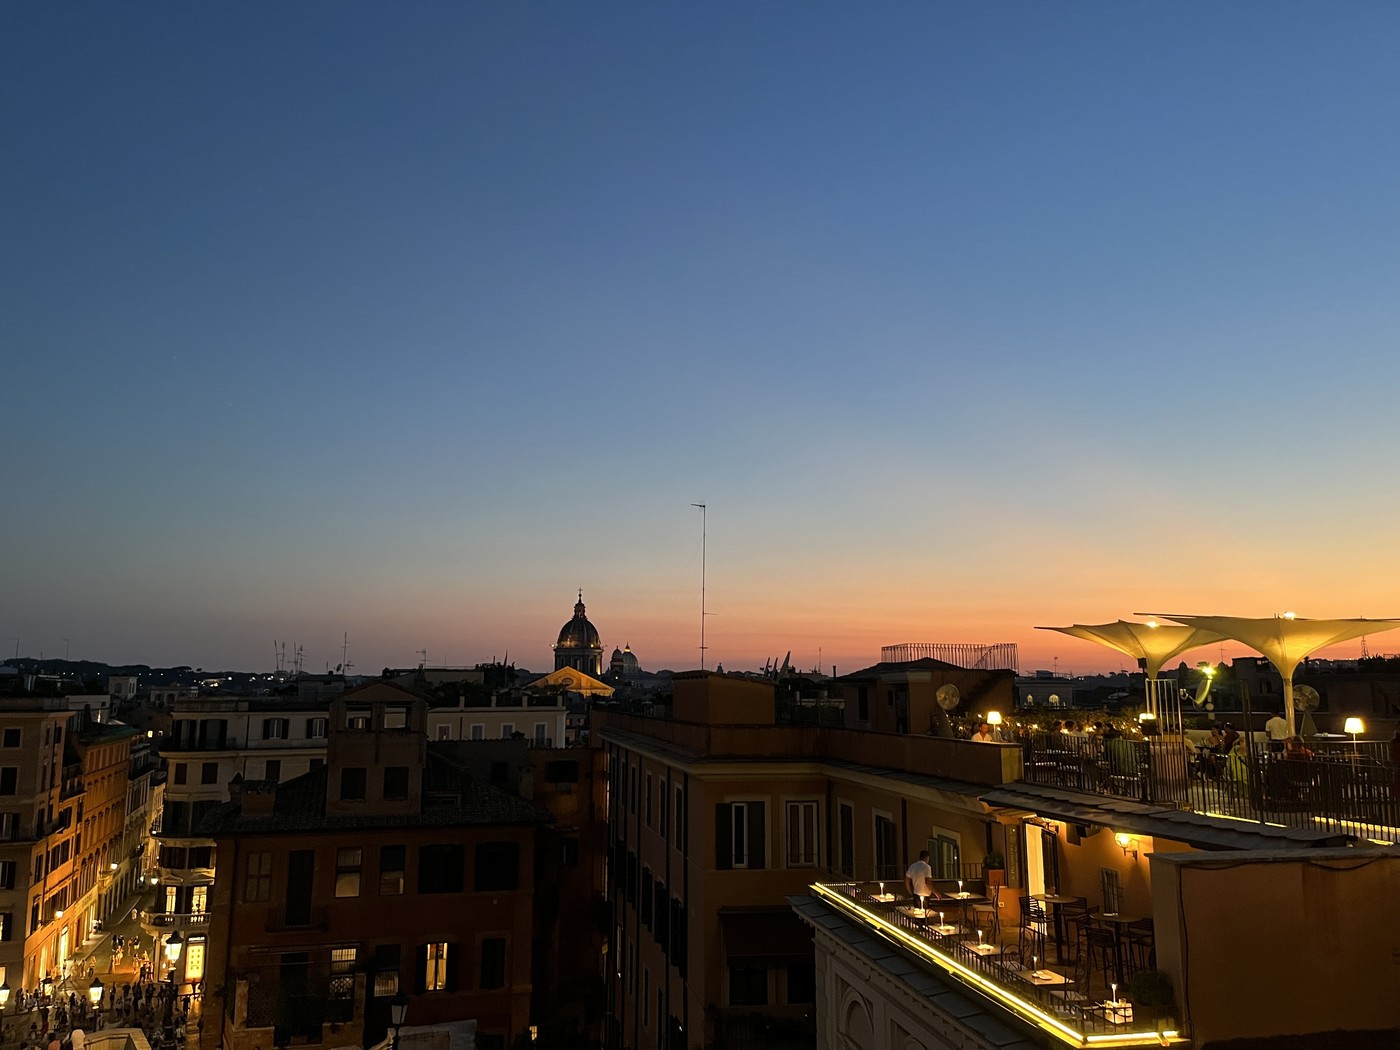 Sonnenuntergang: Ultra kitschig, aber ein Highlight meiner Italien-Reise. 